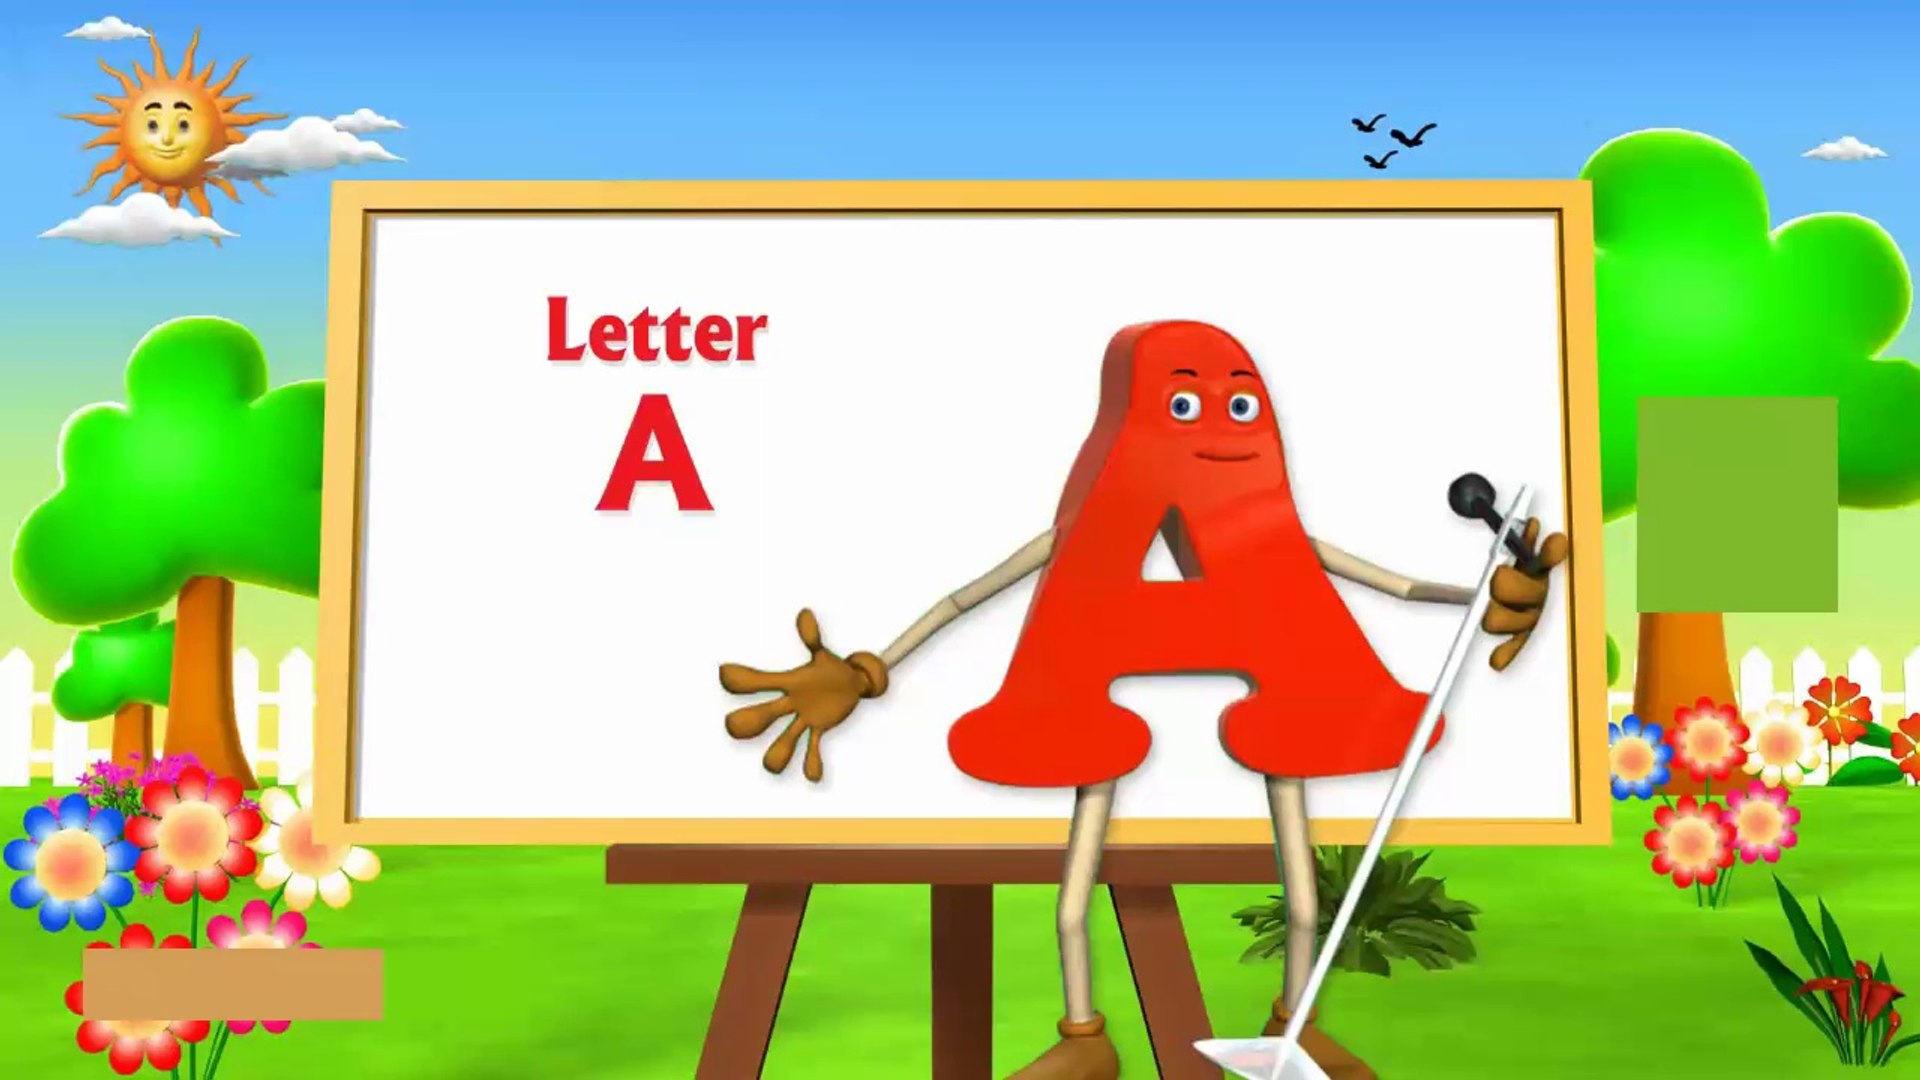 تعليم نطق حرف a للاطفال - تعليم الحروف الانجليزية للاطفال بالصور - فيديو  Dailymotion